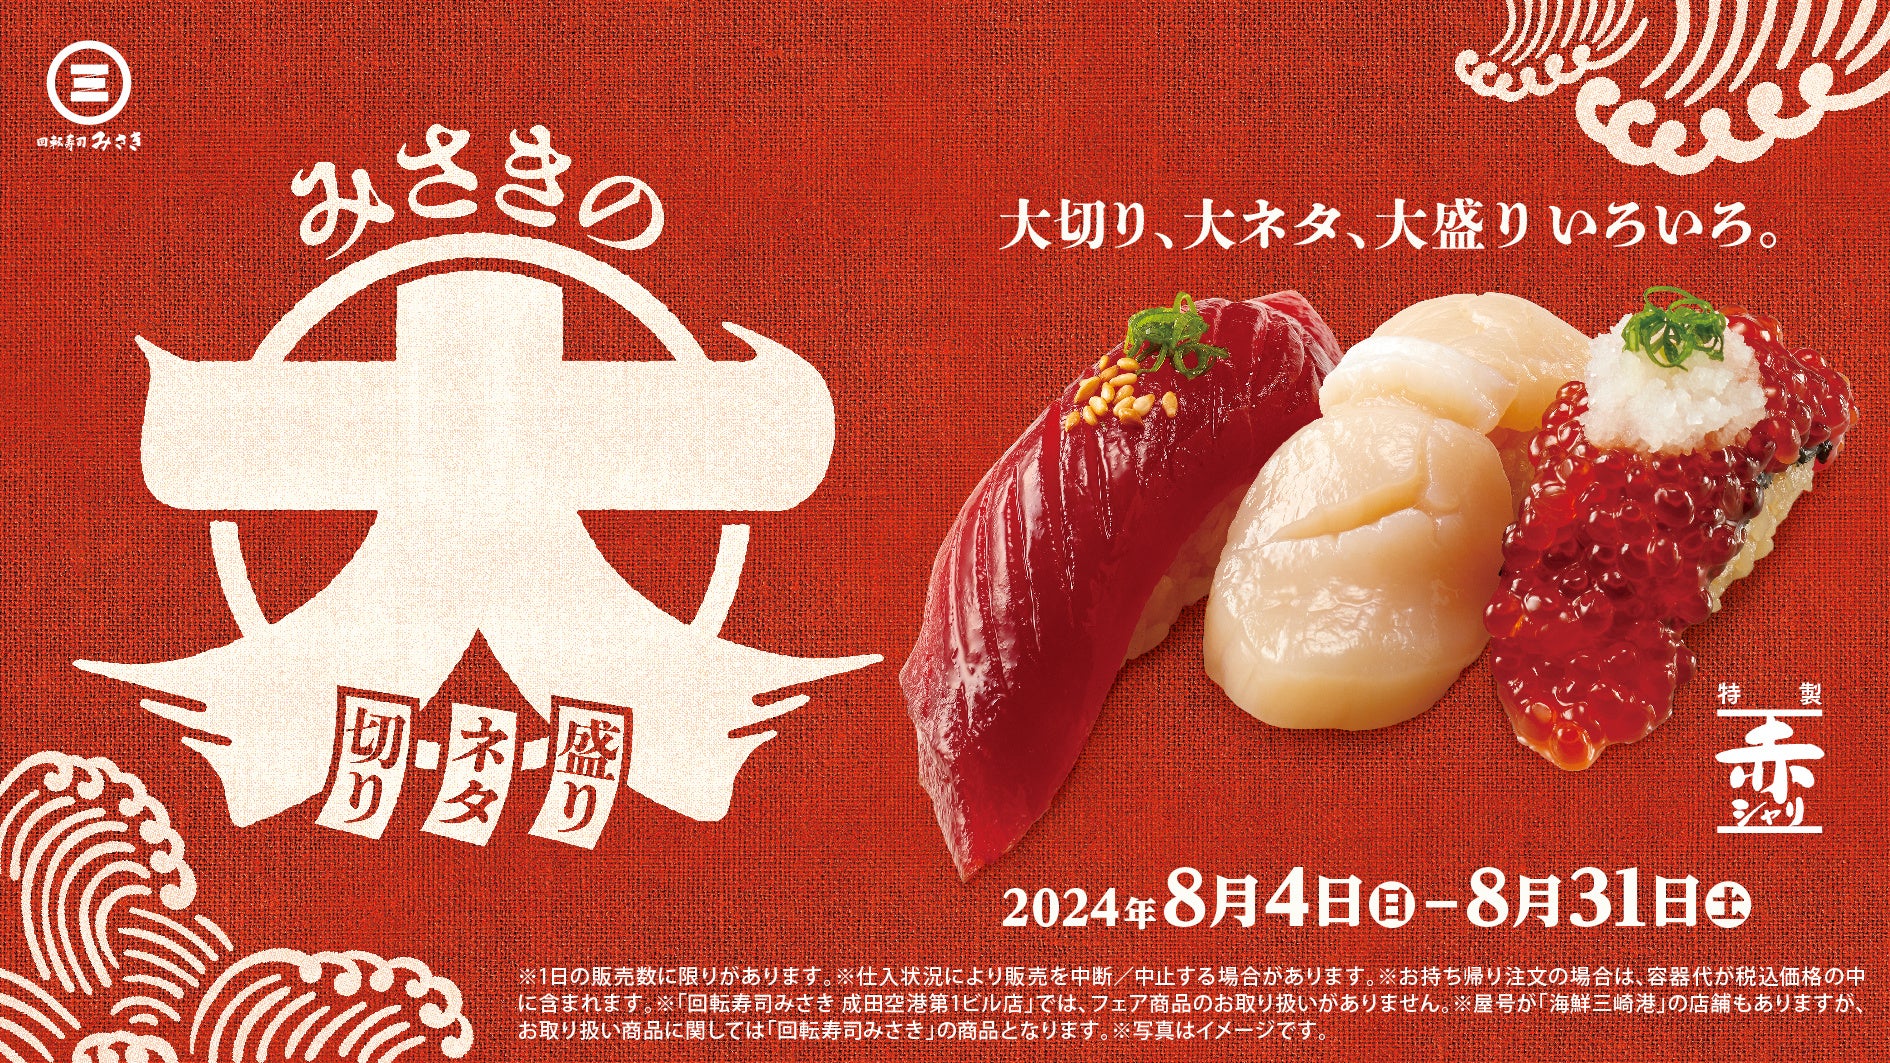 大切り！大ネタ！大盛りの寿司ネタが登場！“特製赤シャリ”で楽しめる期間限定フェア開催！“まぐろの王様”本まぐろの漬けが“大切り”で味わえる！